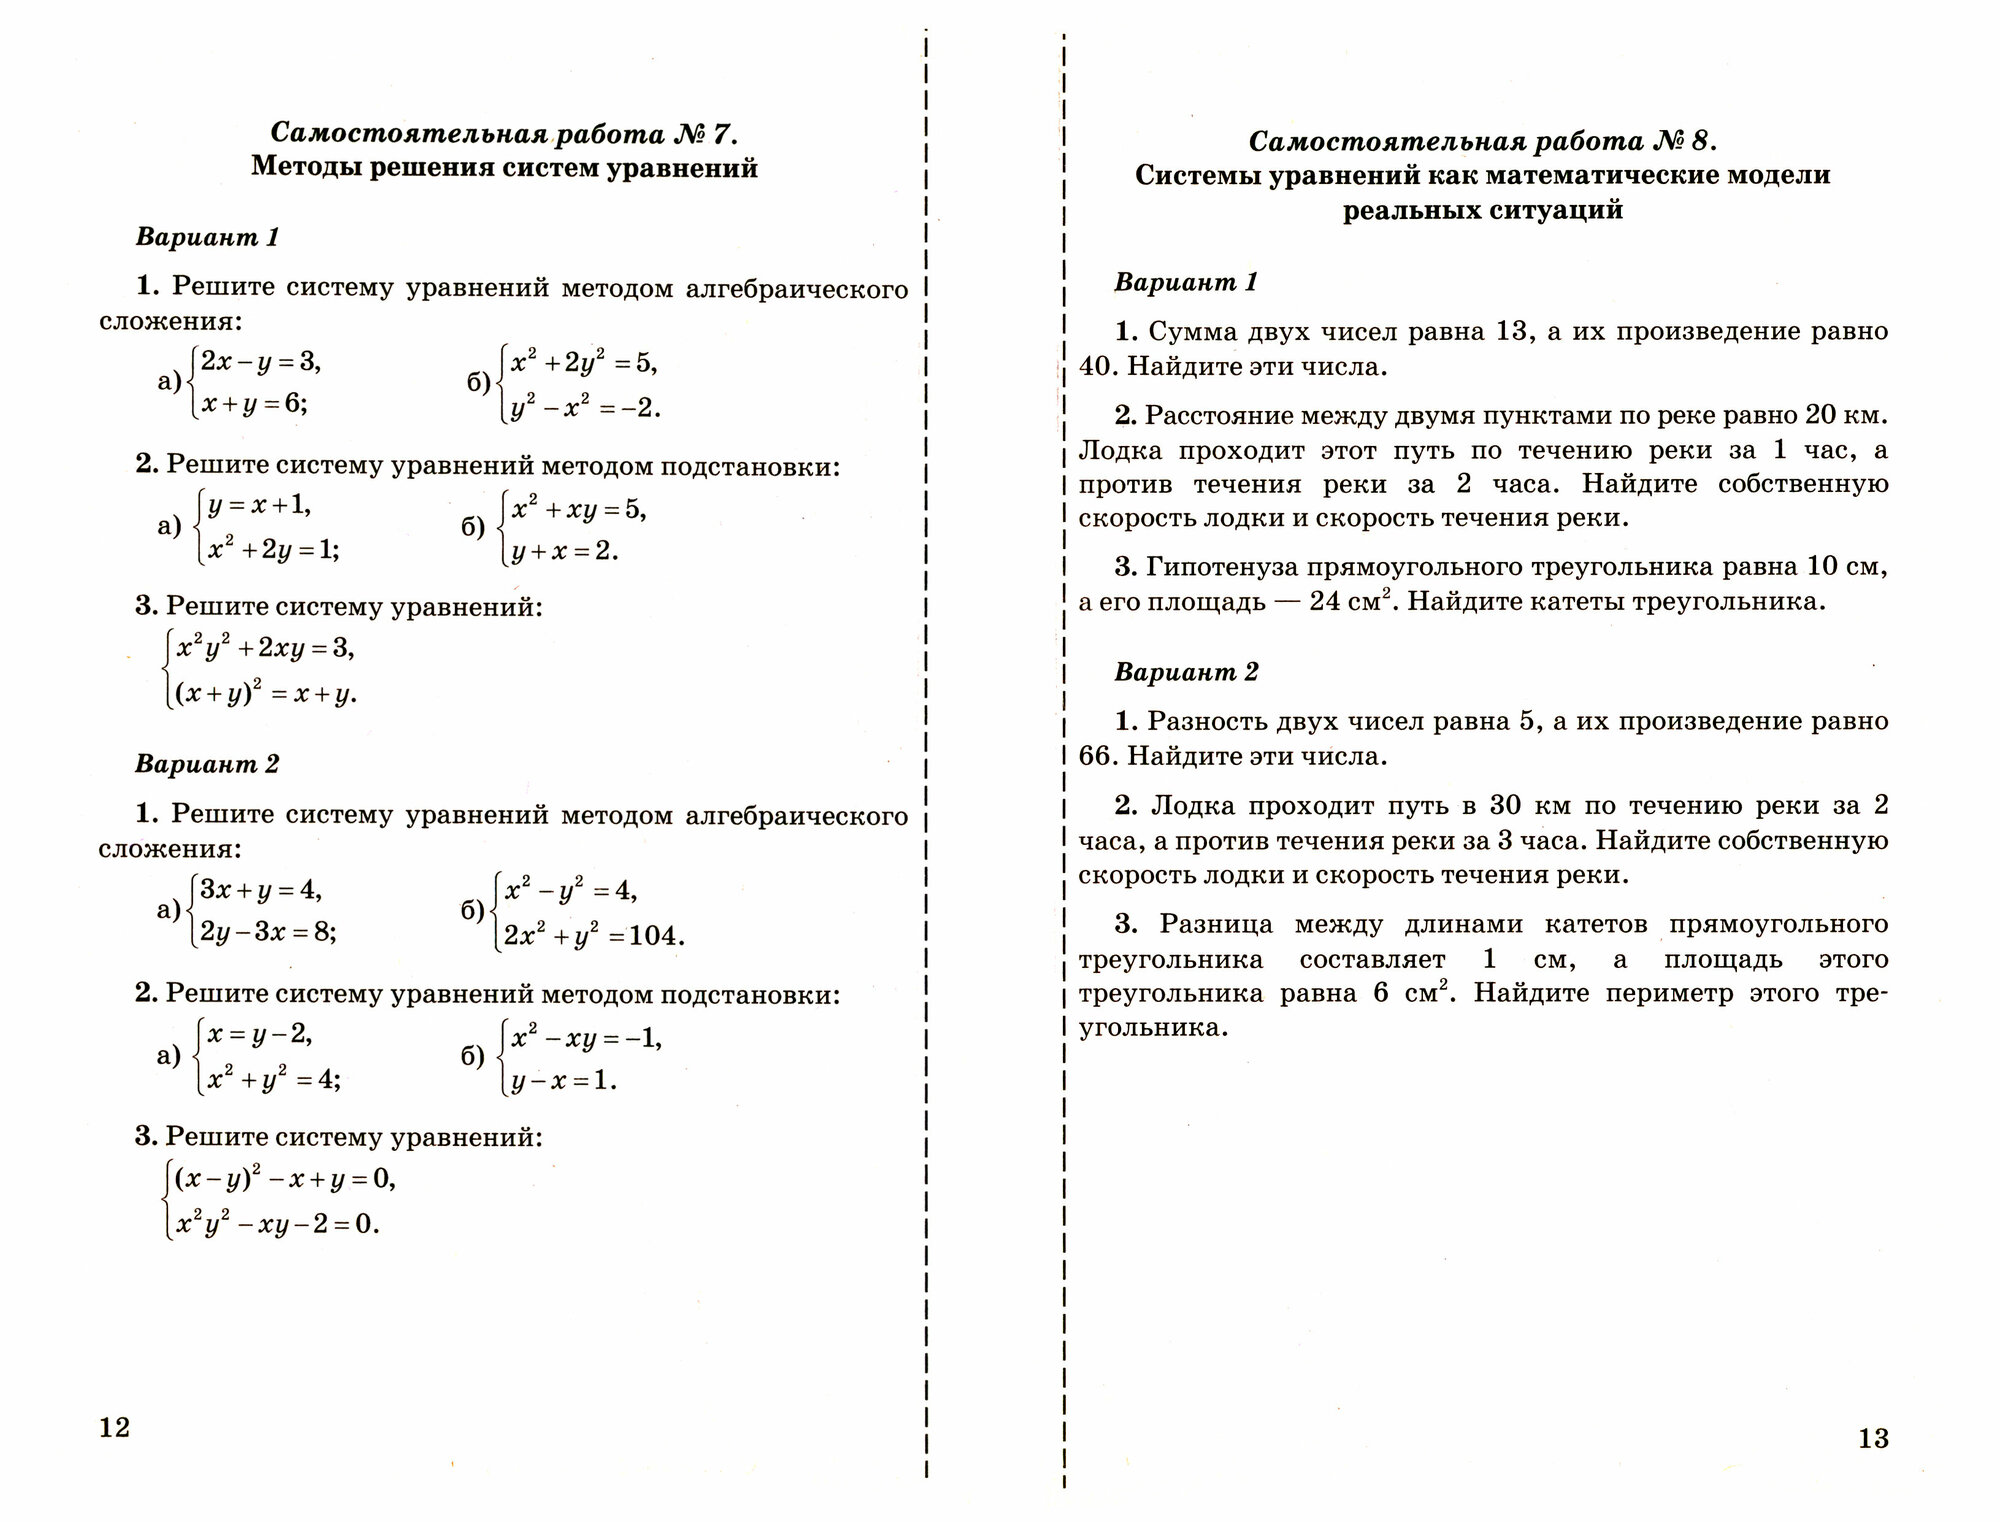 Контрольные и самостоятельные работы по алгебре. 9 класс. К учебнику А.Г. Мордковича "Алгебра. 9 класс" (М: Мнемозина) - фото №3